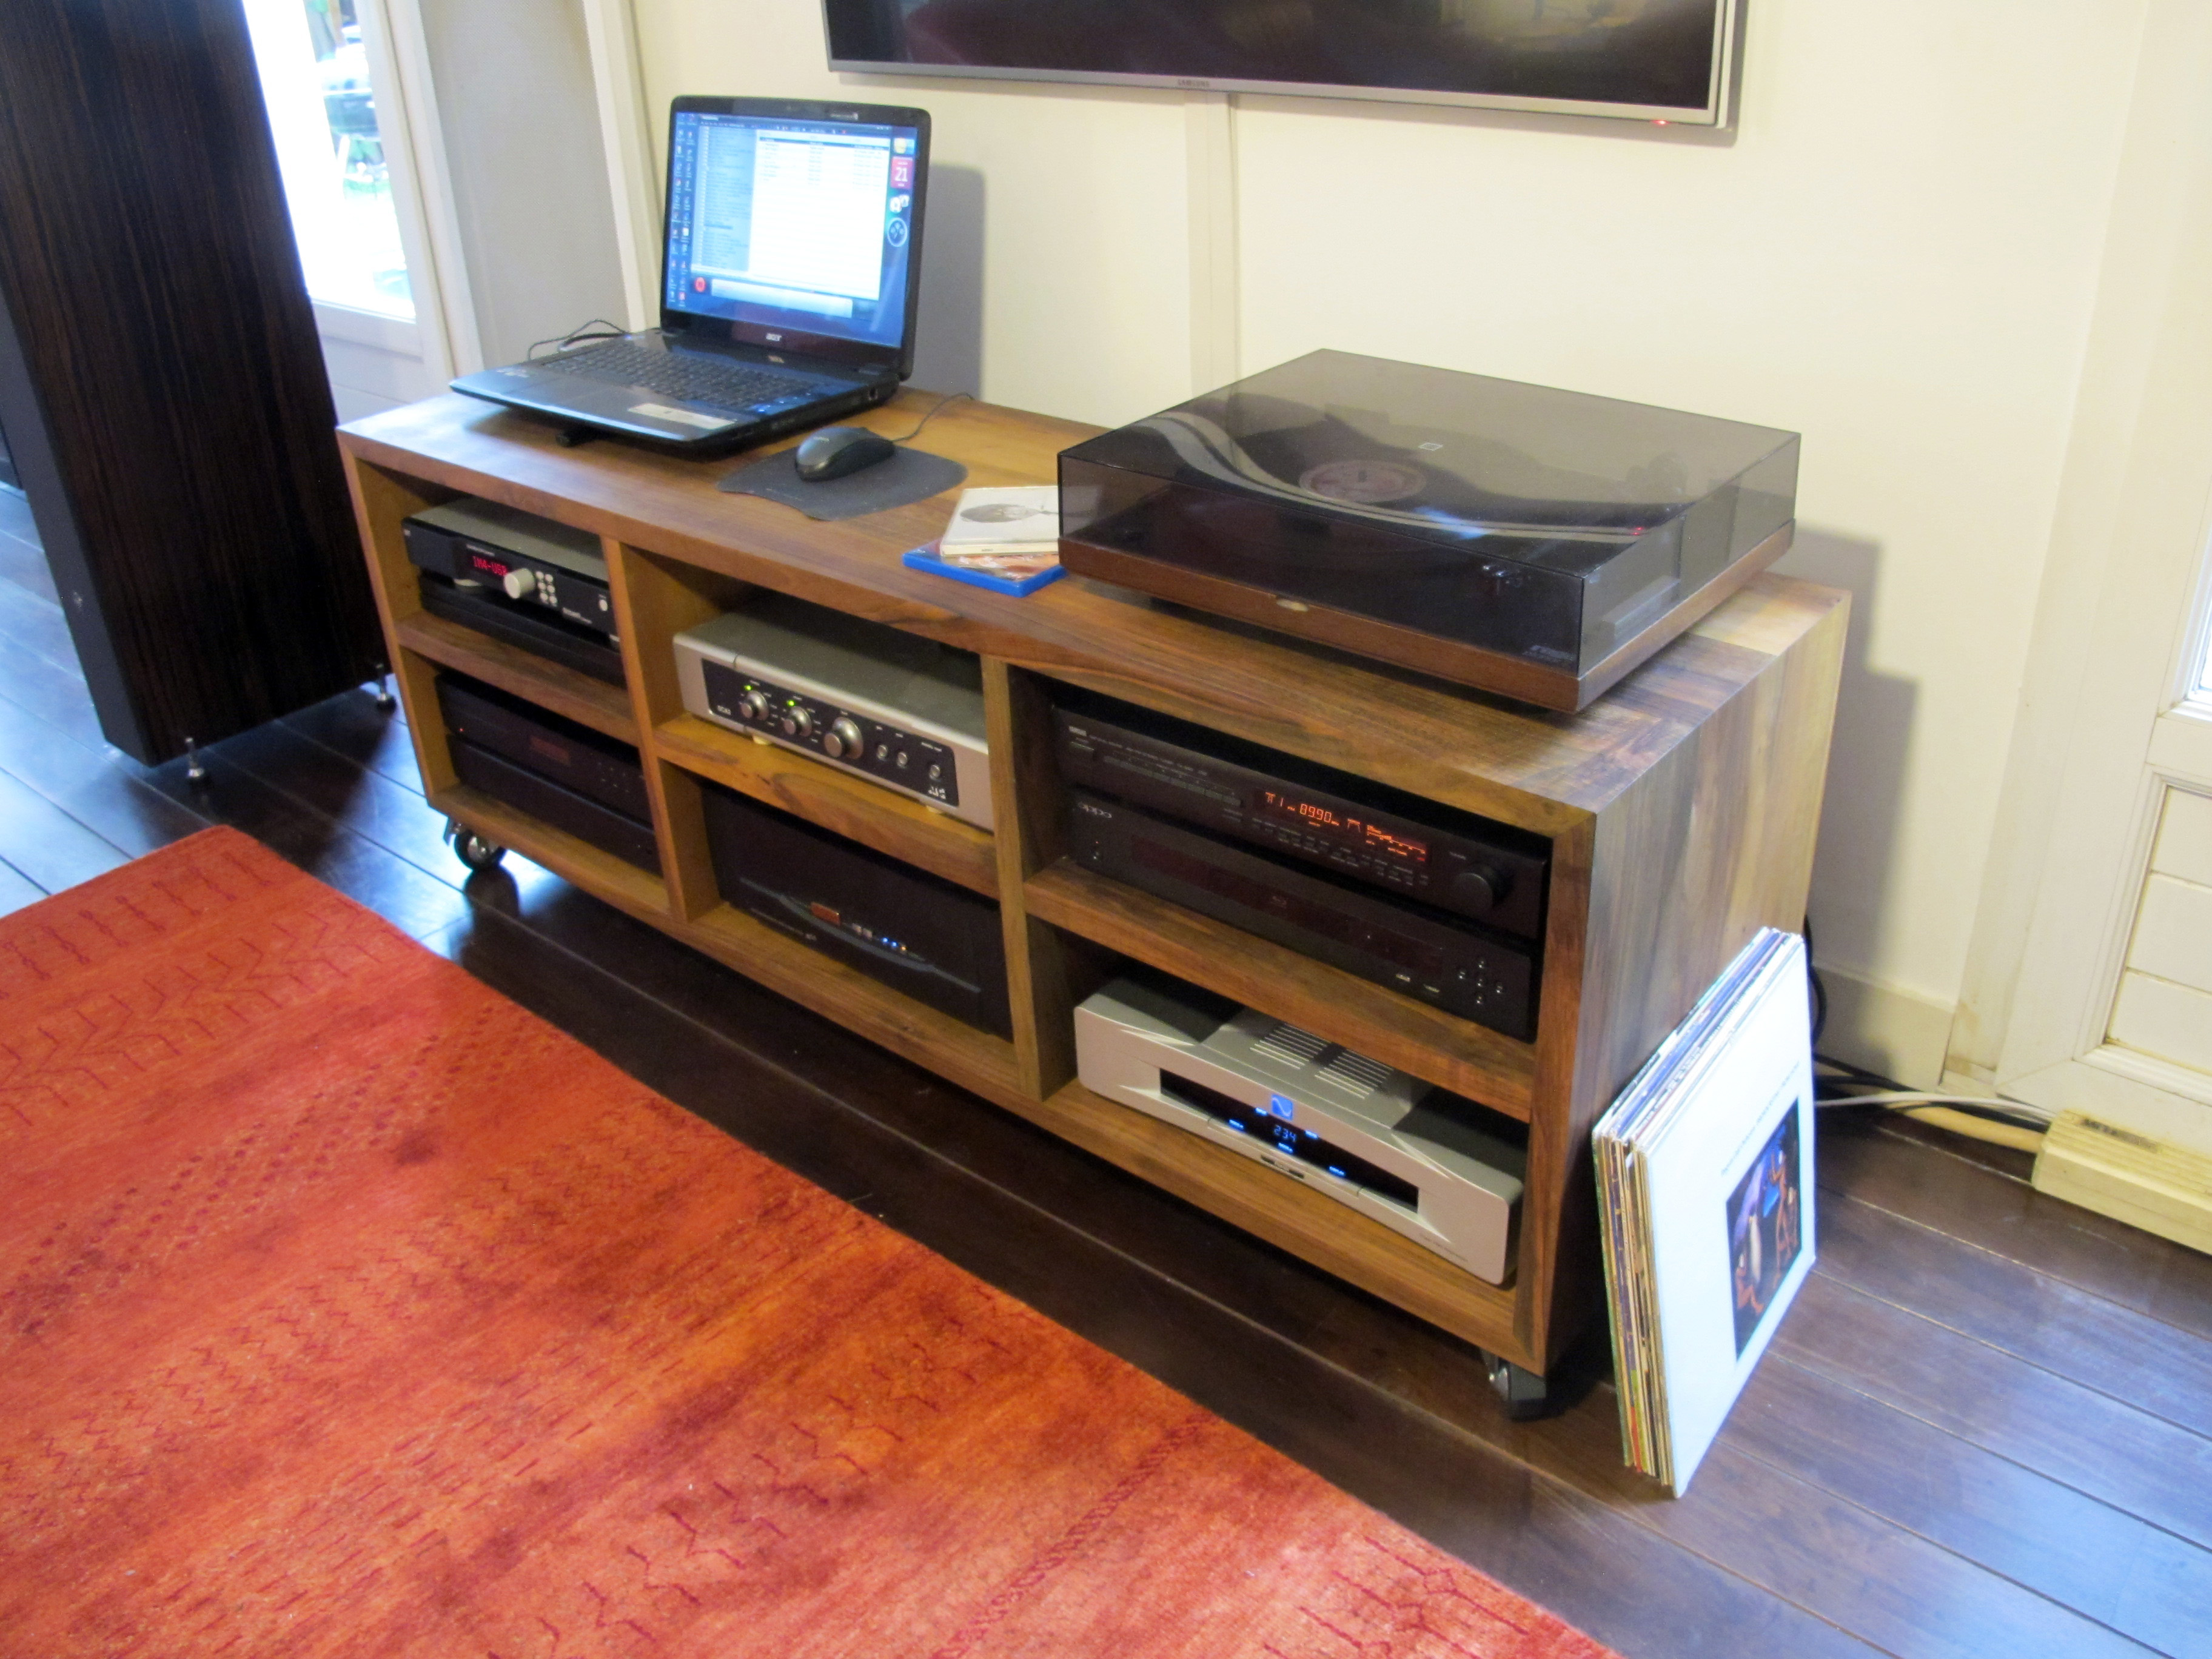 Le meuble TV - HIFI permet d’accueillir tout le matériel audio et vidéo.